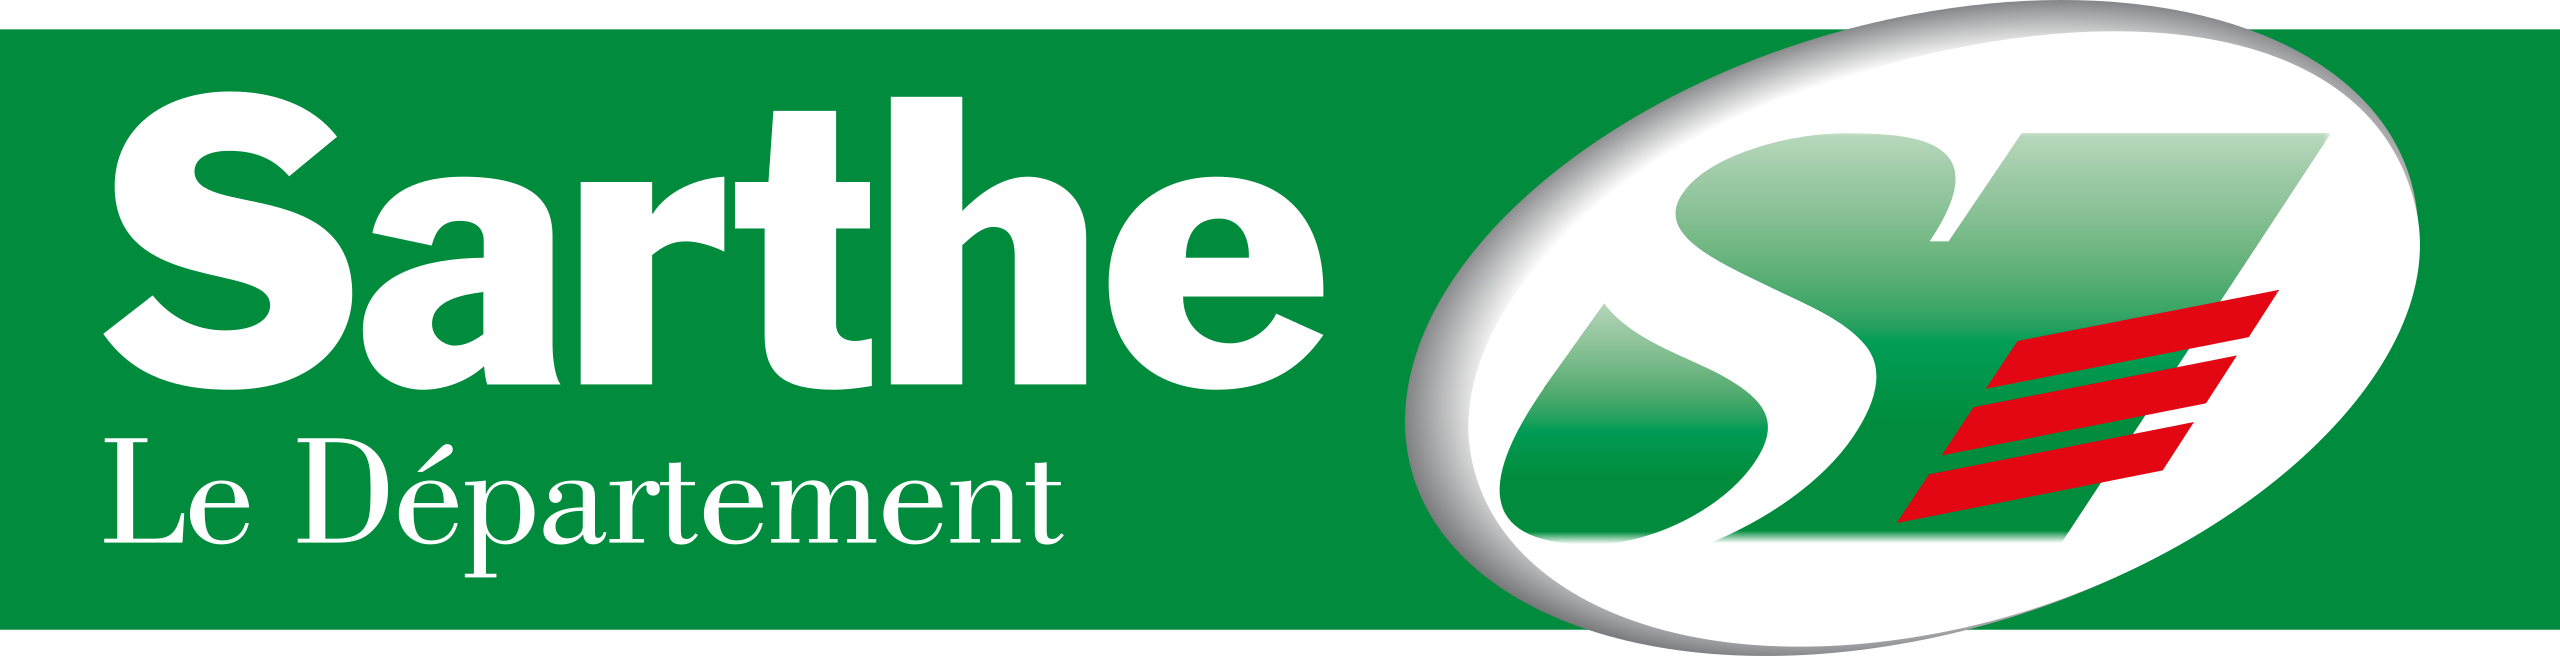 Logo du conseil départemental de la sarthe